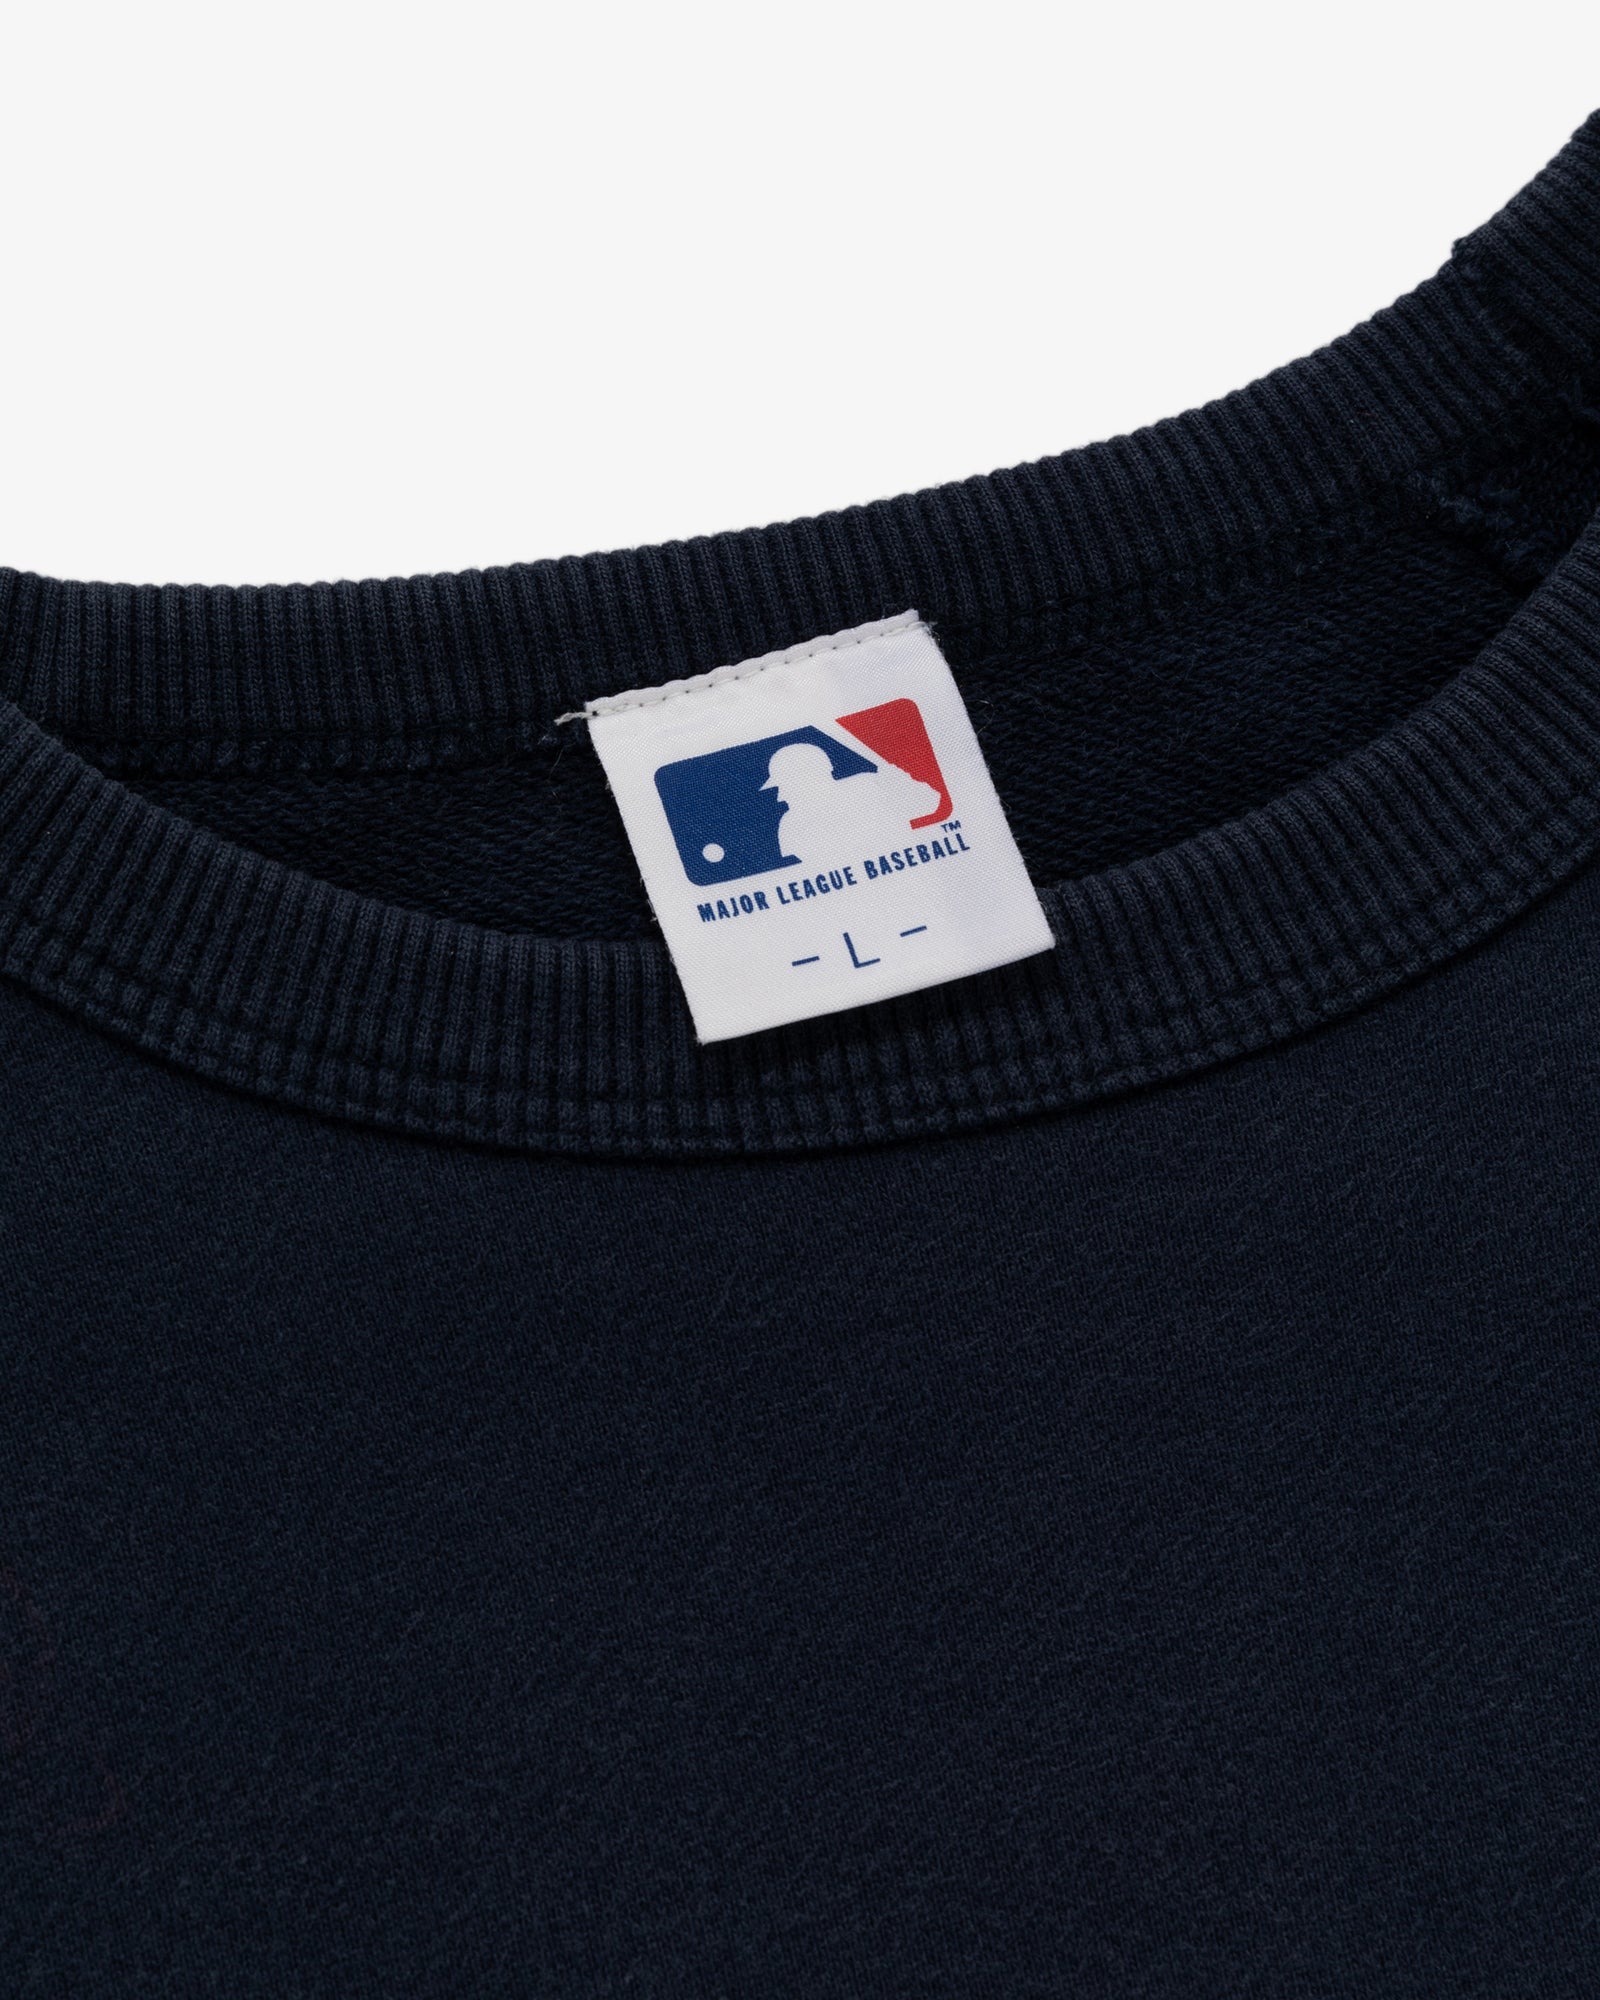 Vintage New York Yankees Crewneck Sweatshirt